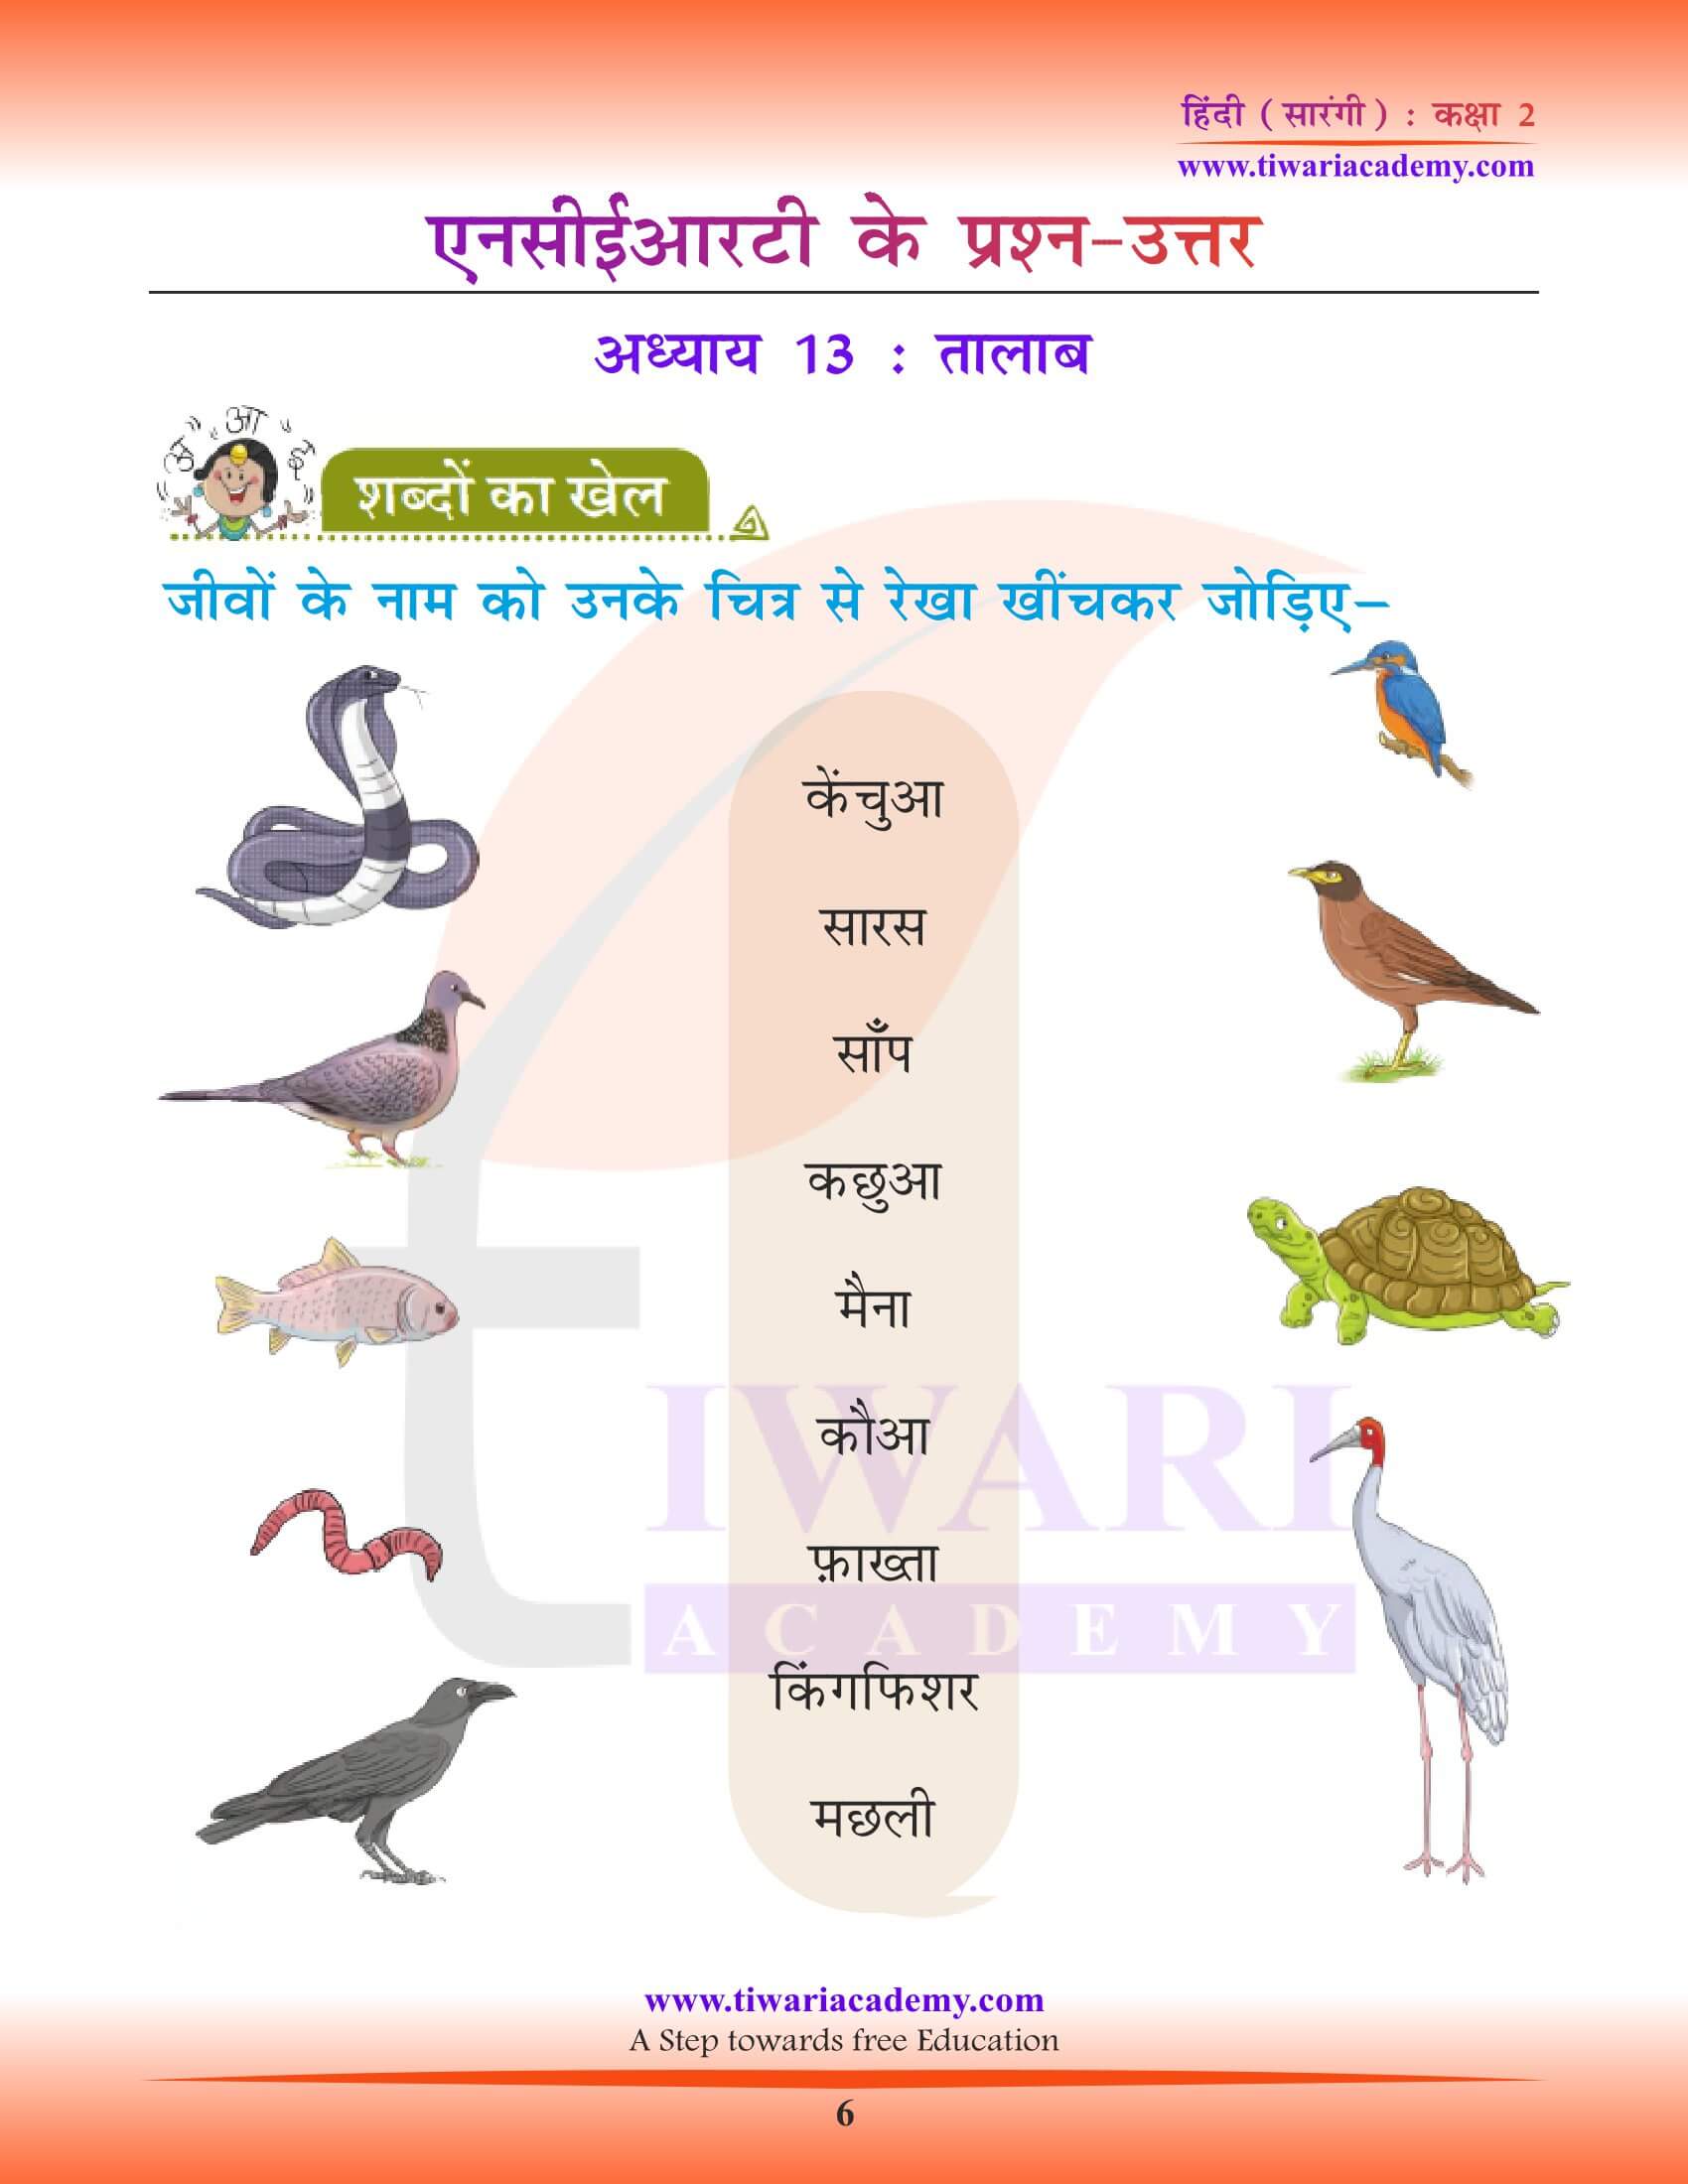 कक्षा 2 हिंदी सारंगी अध्याय 13 के हल